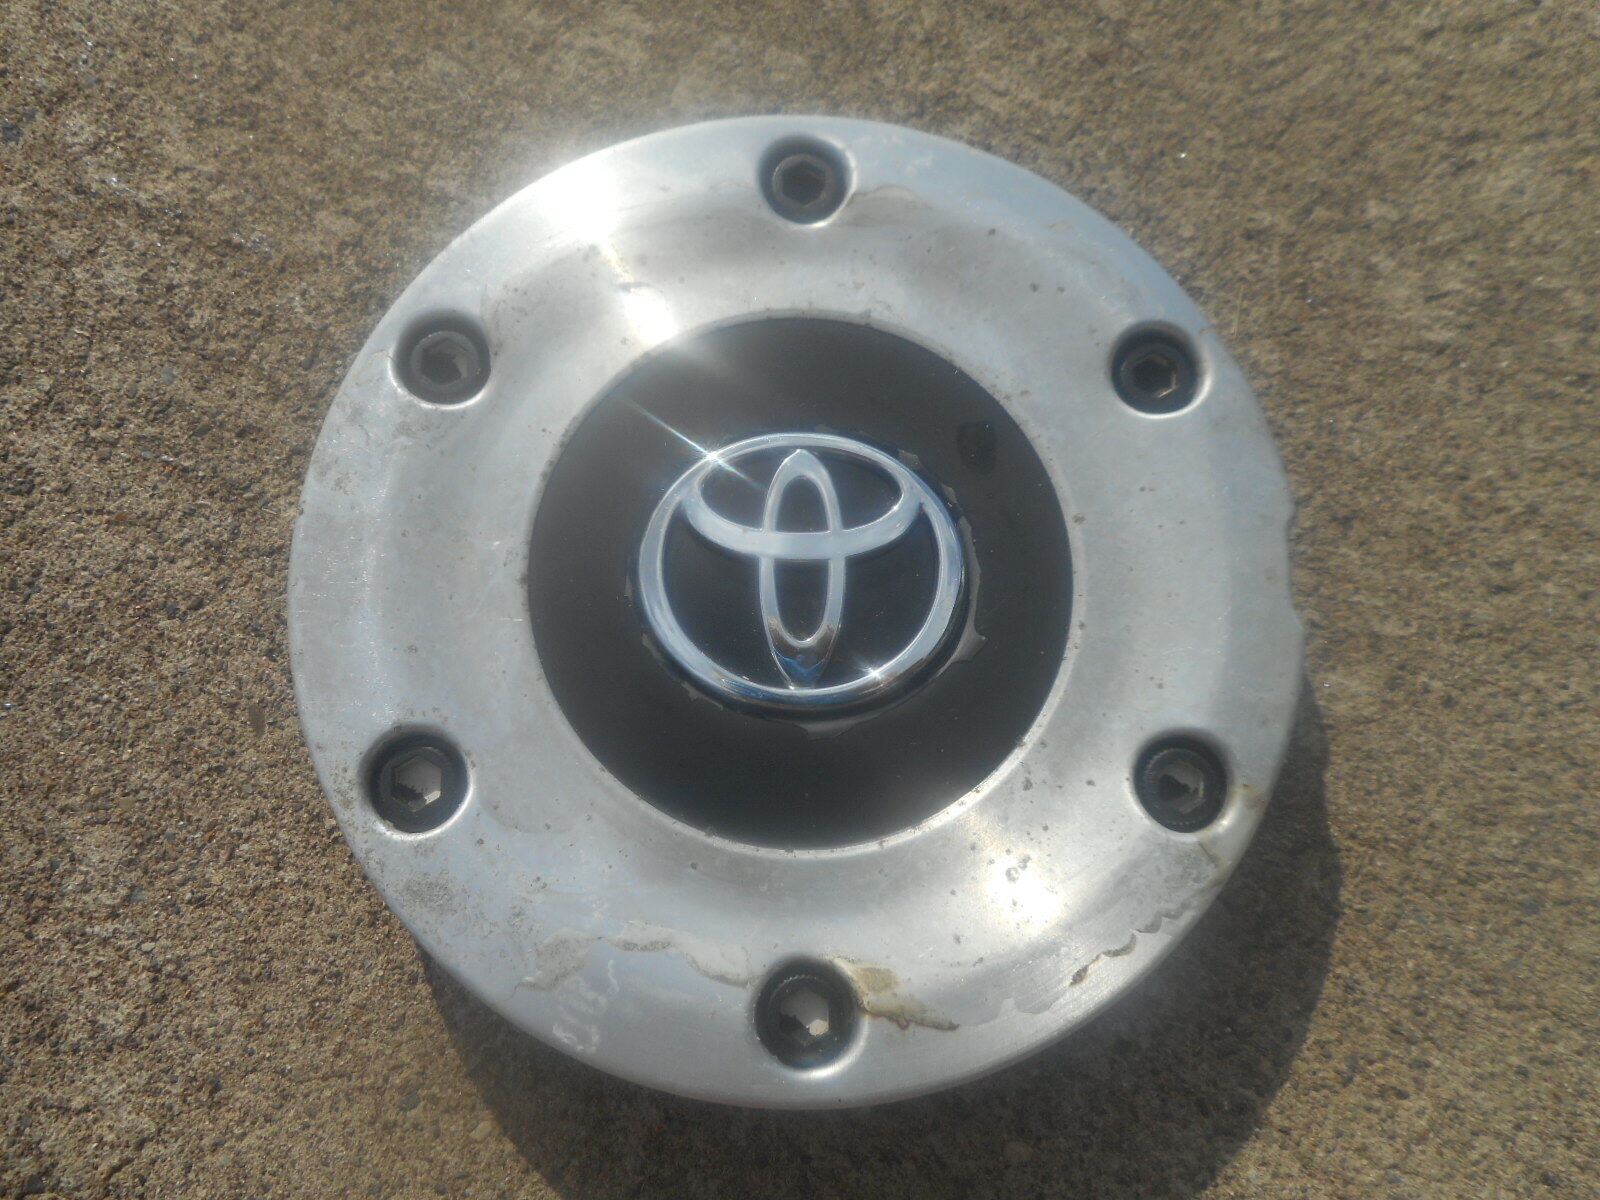 1 Toyota Solara Wheel Center Cap 1999 2000 2001 2002 2003 42603-AA050 Hubcap 16